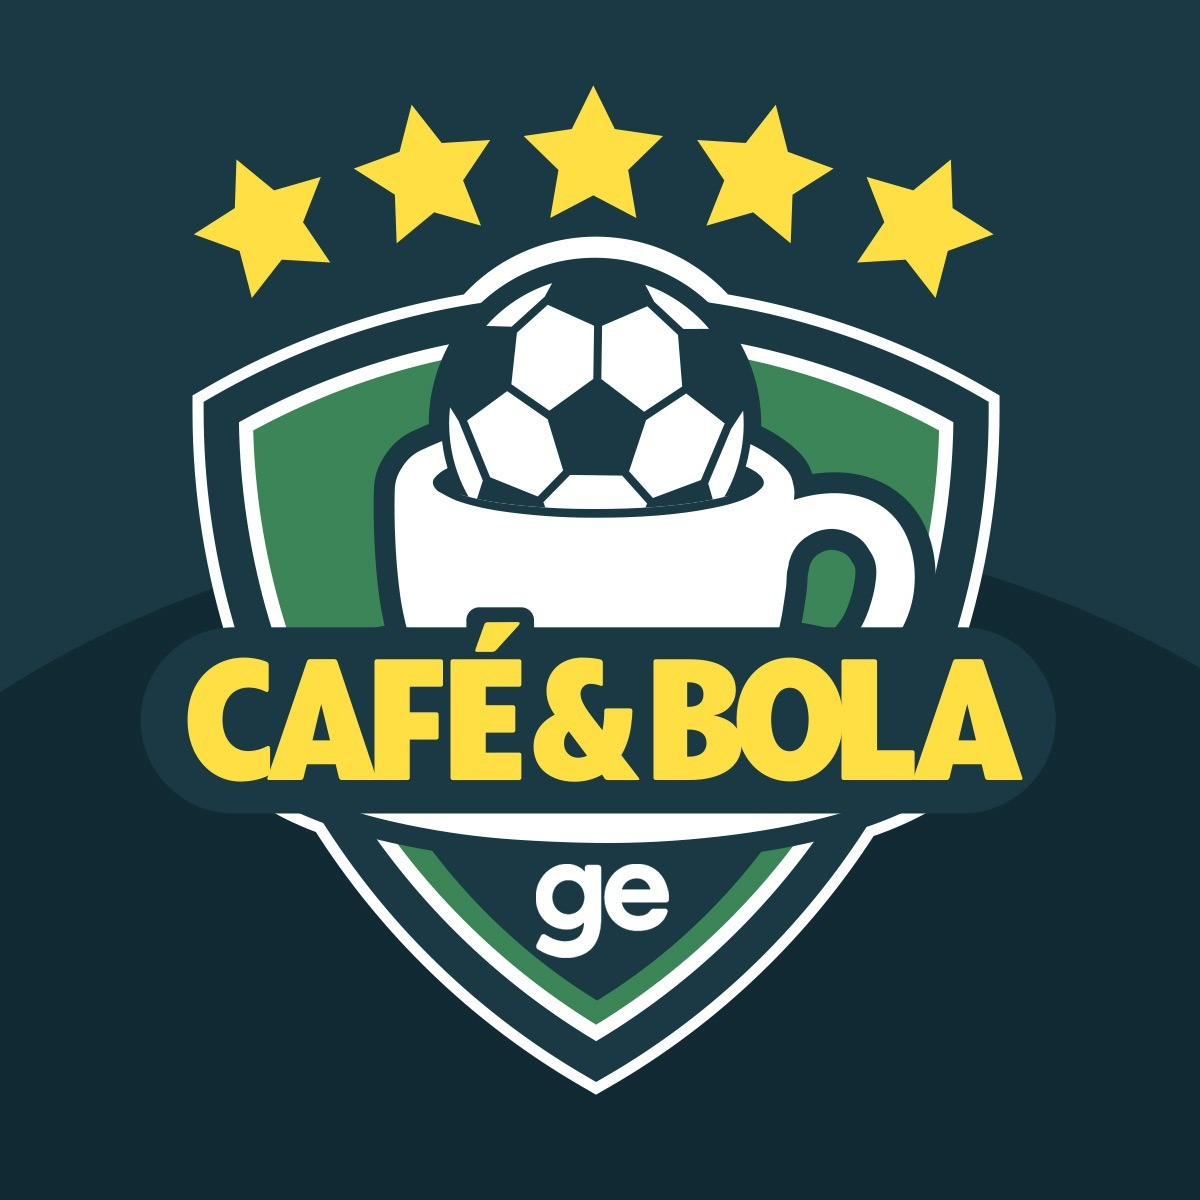 Café&Bola #48 - Os times da virada? Vasco vence nos acréscimos e Dragão derrota o Fluminense apesar da vantagem tricolor